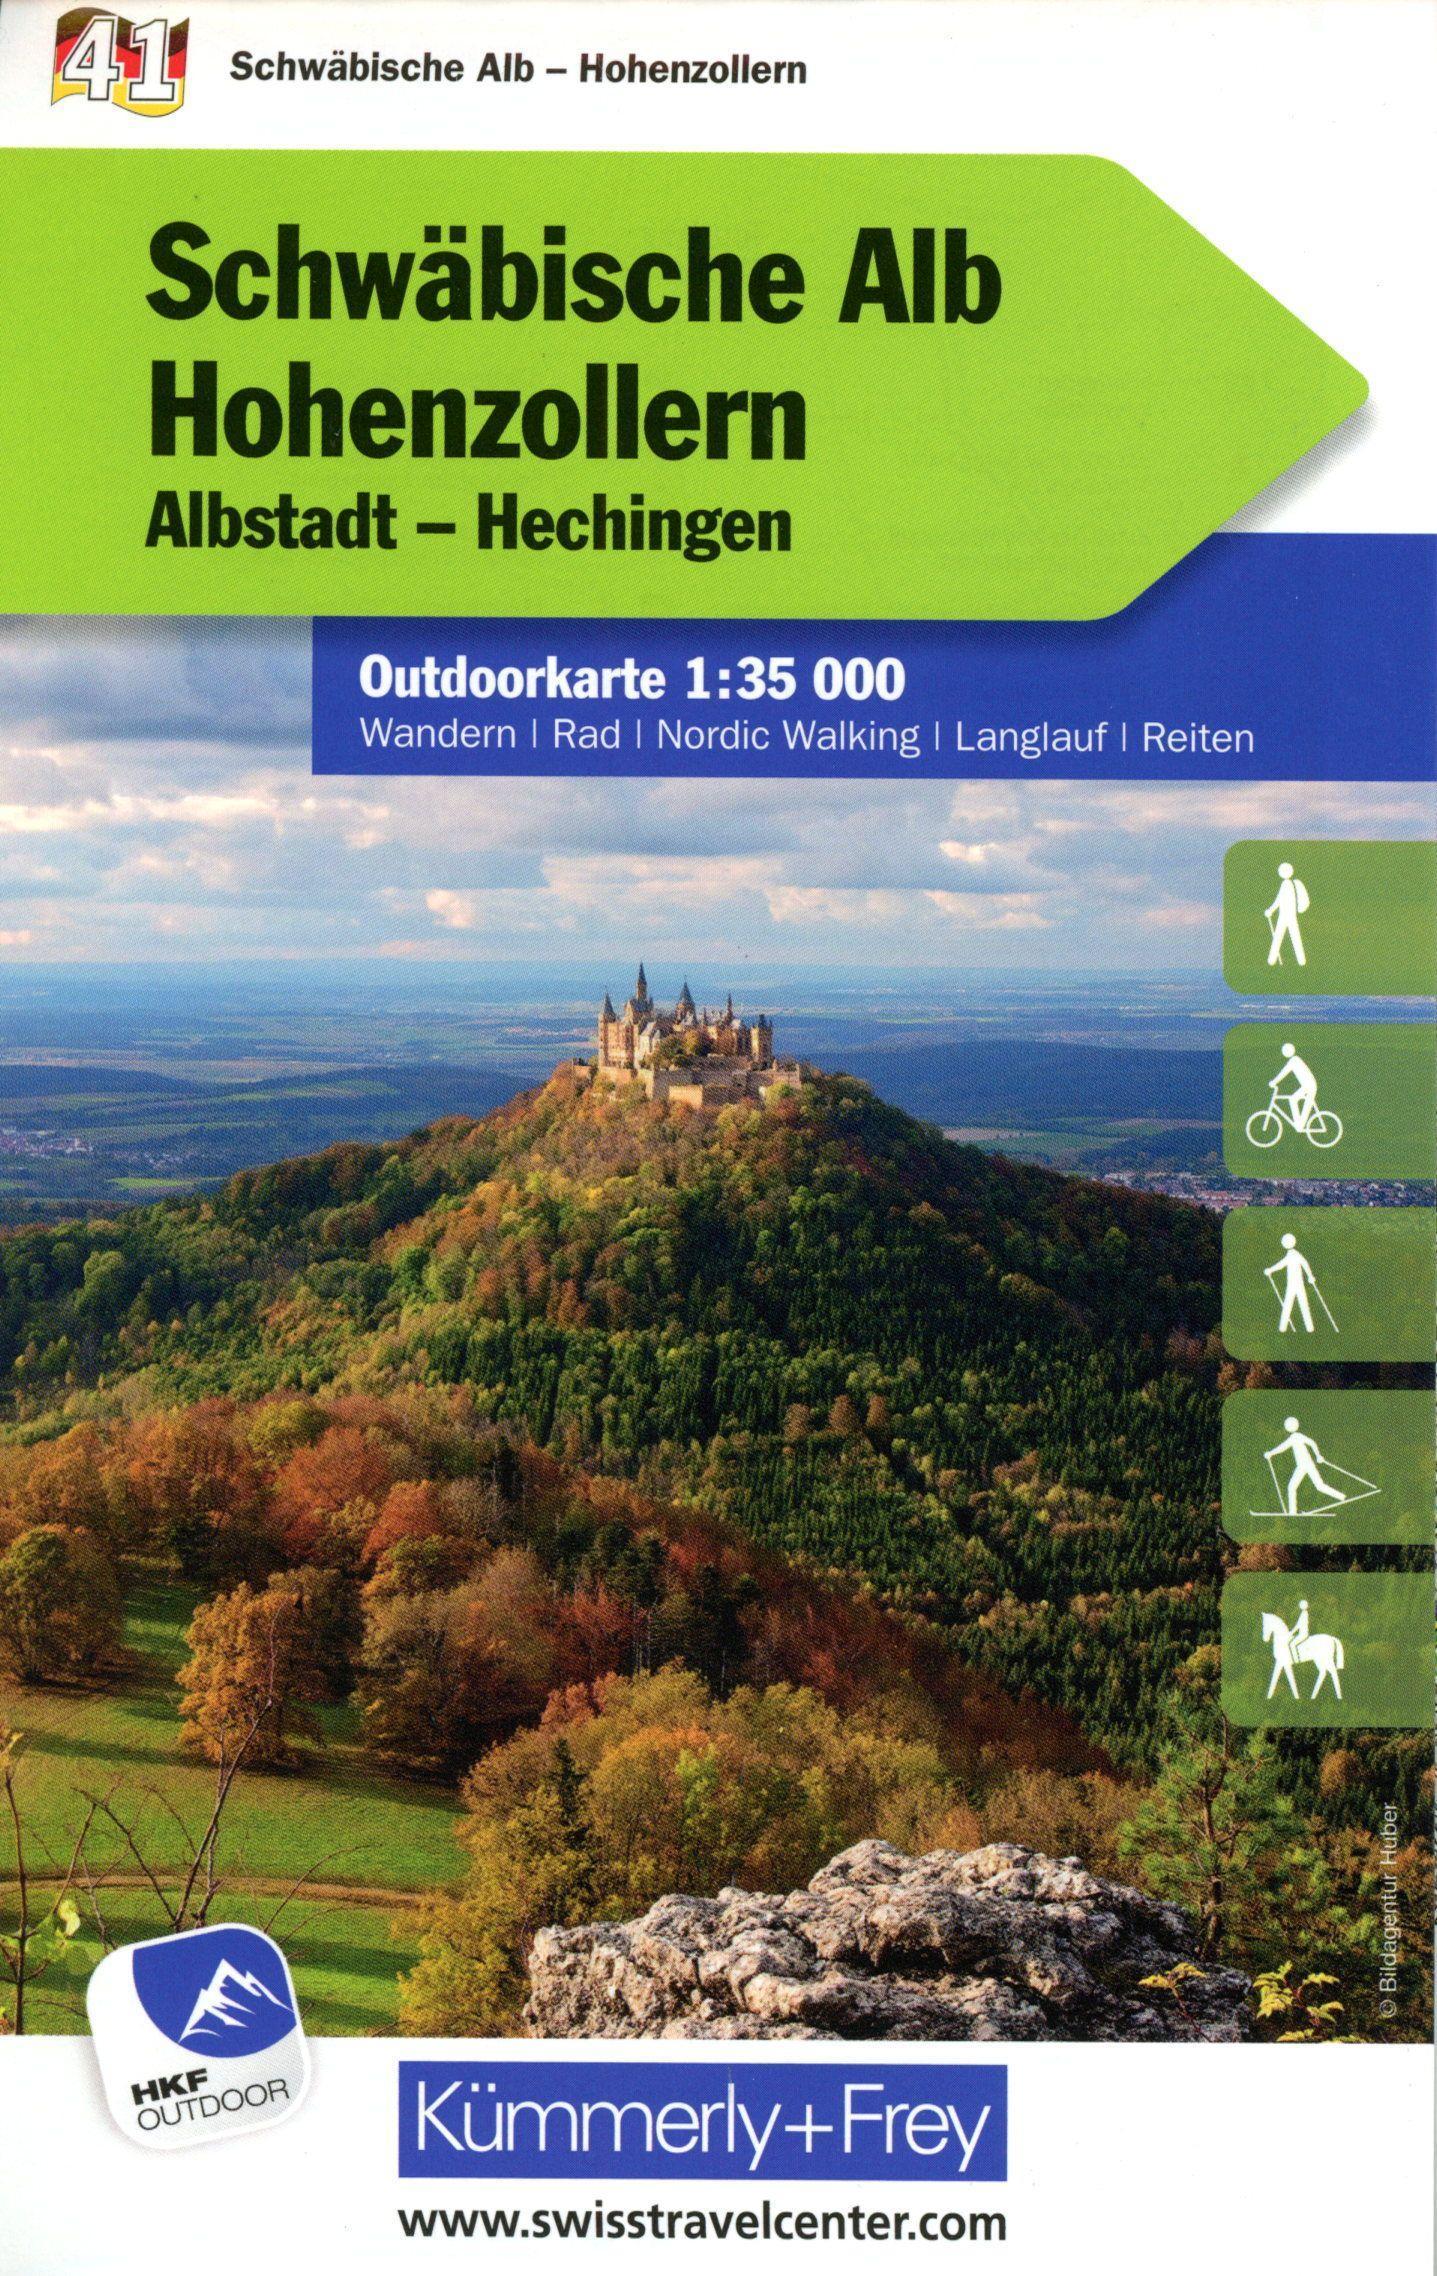 Kümmerly & Frey Outdoorkarte Schwäbische Alb Hohenzollern 